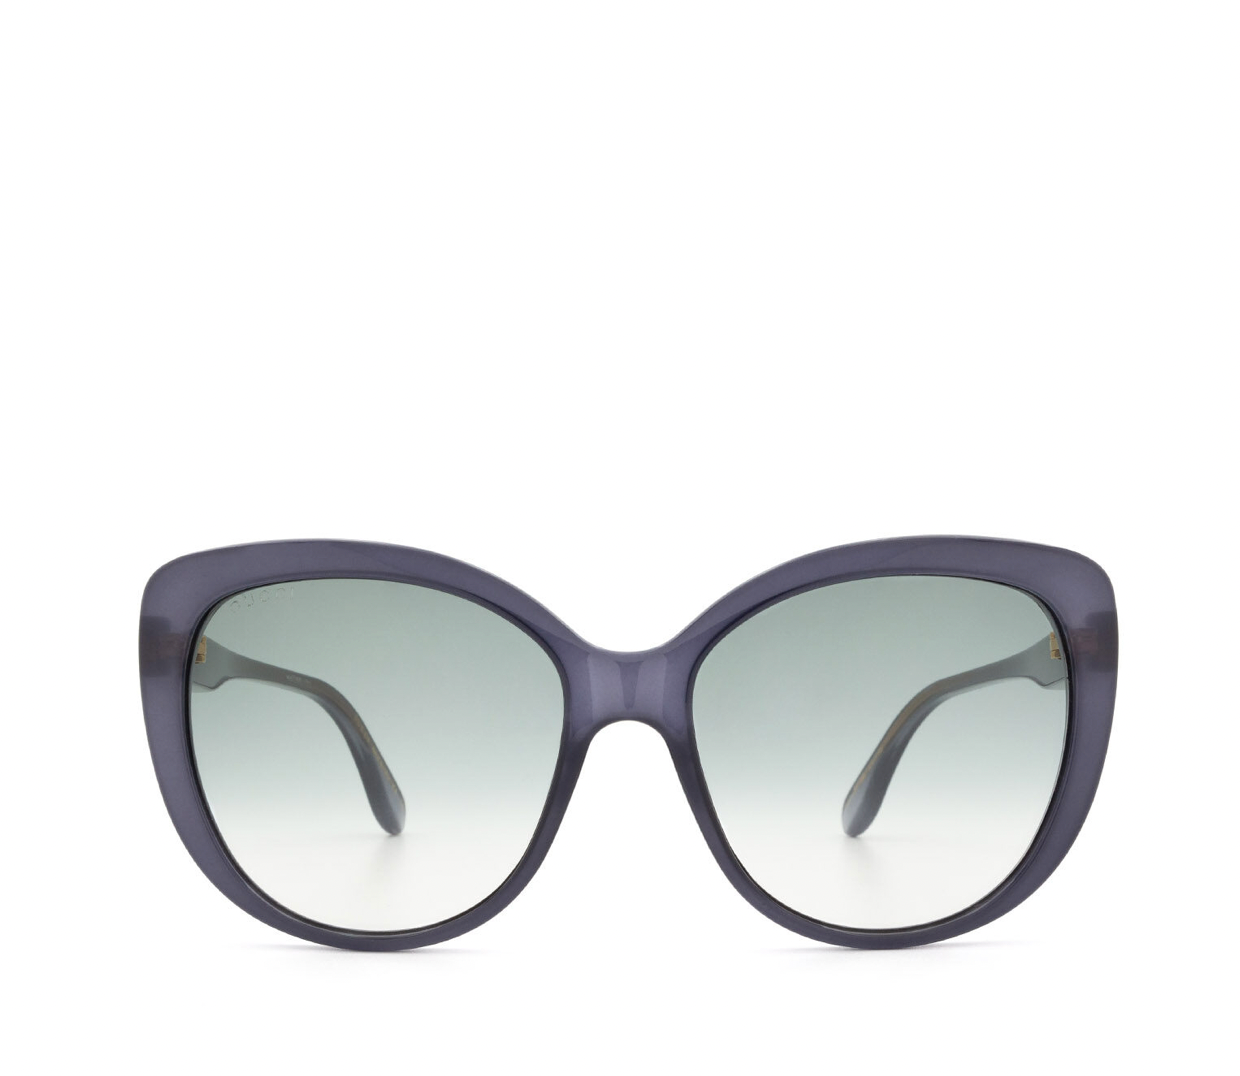 Gucci GG0789S-004-57 57mm New Sunglasses